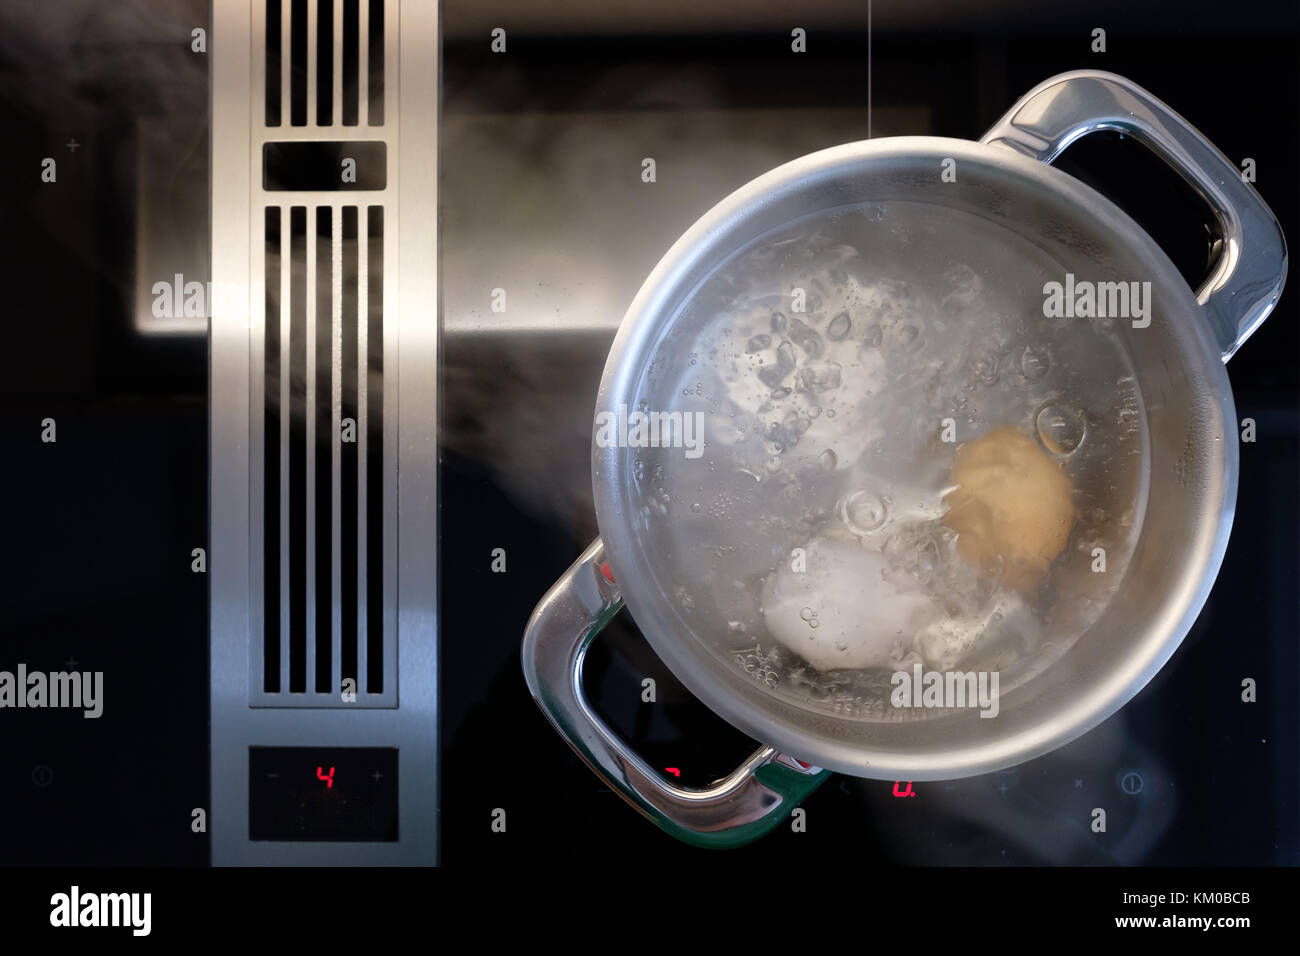 La cuisson des oeufs dans l'eau dans une casserole sur une cuisinière avec ventilateur d'extraction Banque D'Images